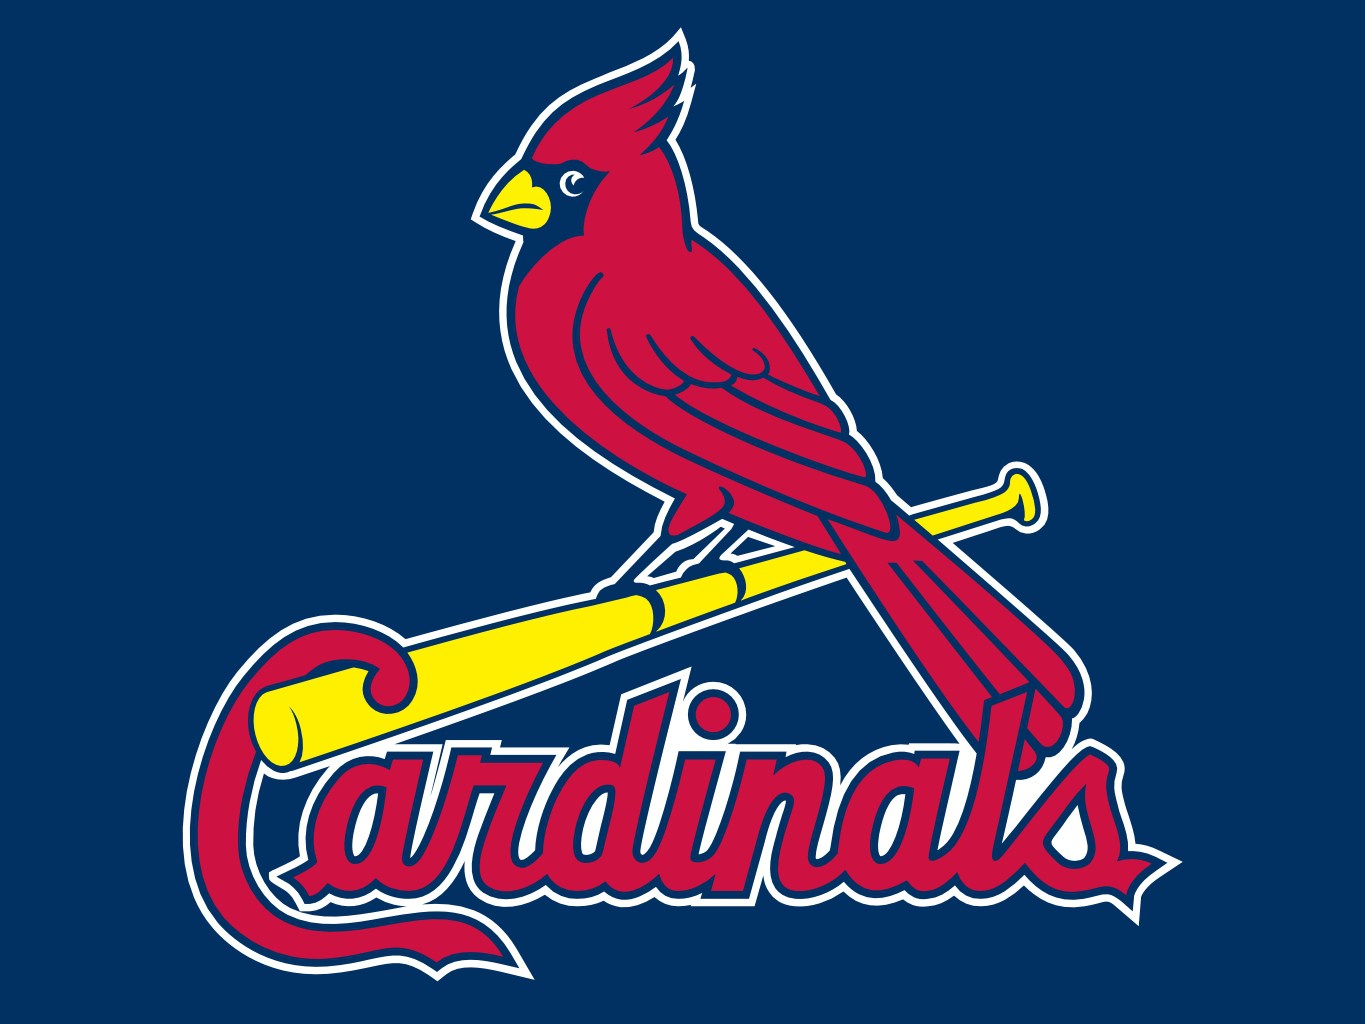 St Louis Cardinals Baseball Team Wallpaper Jpg